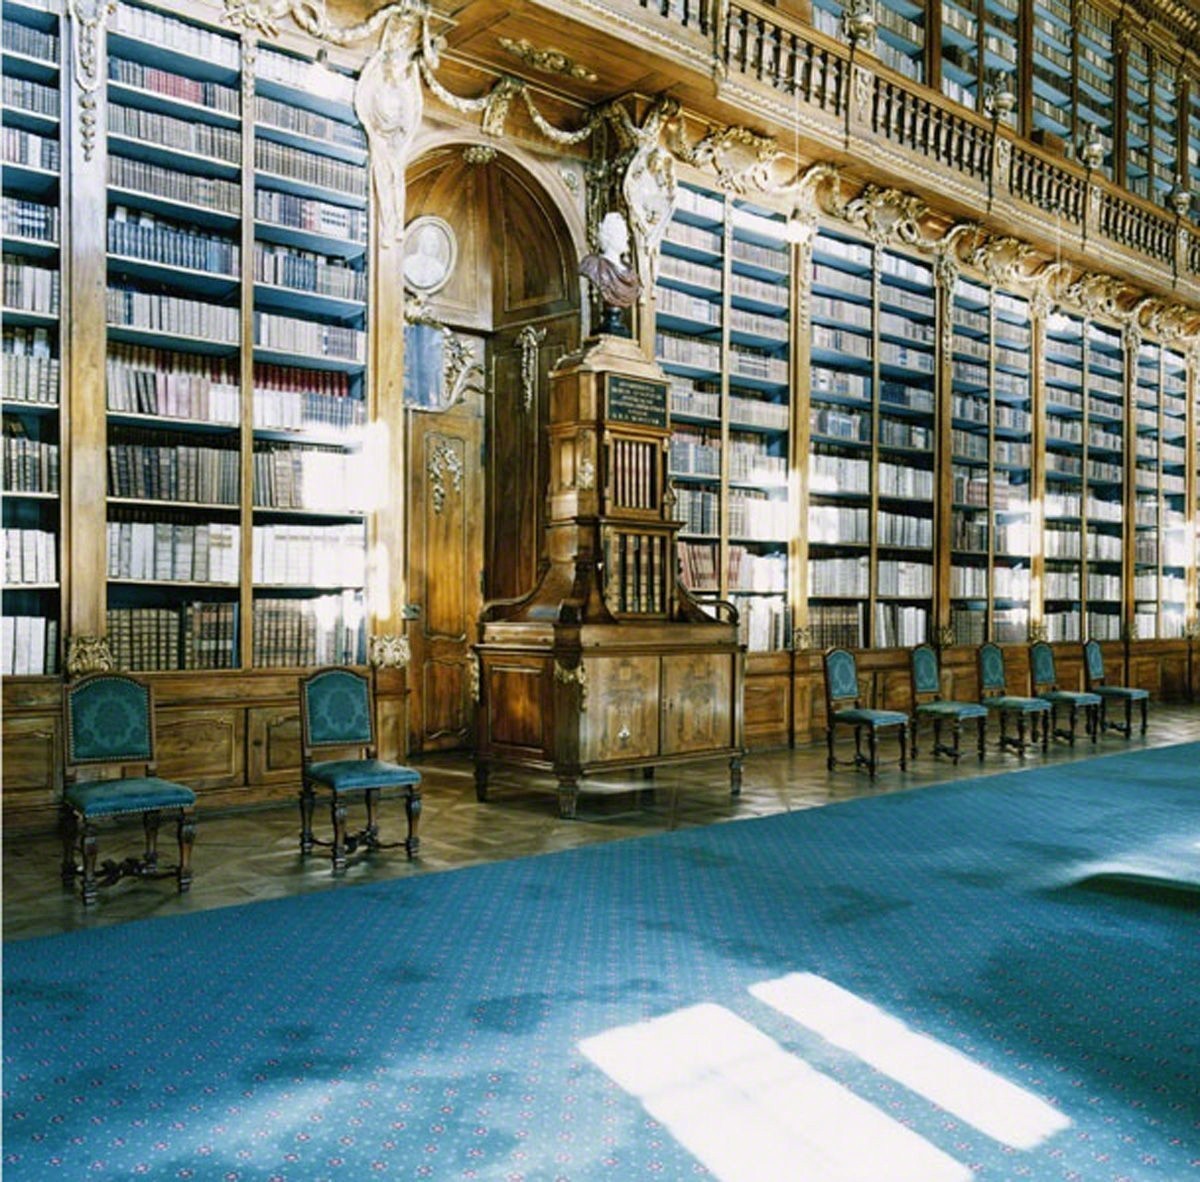 Страговская библиотека, Прага, 2004. Фотограф Кандида Хёфер